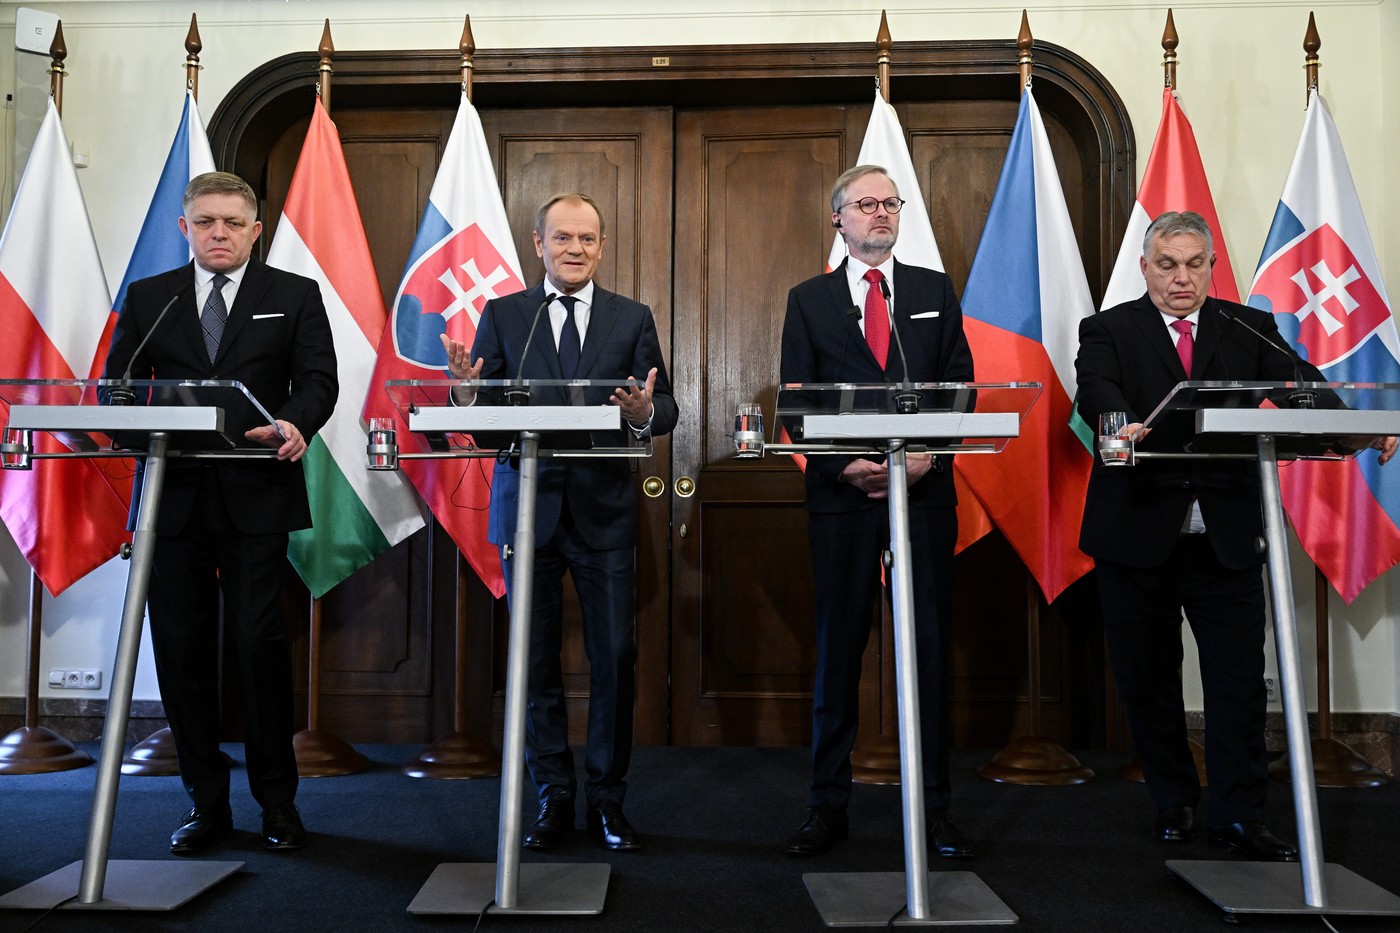 Die Premierminister der Visegrád-Staaten Robert Fico (Slowakei), Donald Tusk (Polen), Petr Fiala (Tschechien) und Viktor Orban (Ungarn) beim Gipfeltreffen in Prag. Foto: Profimedia